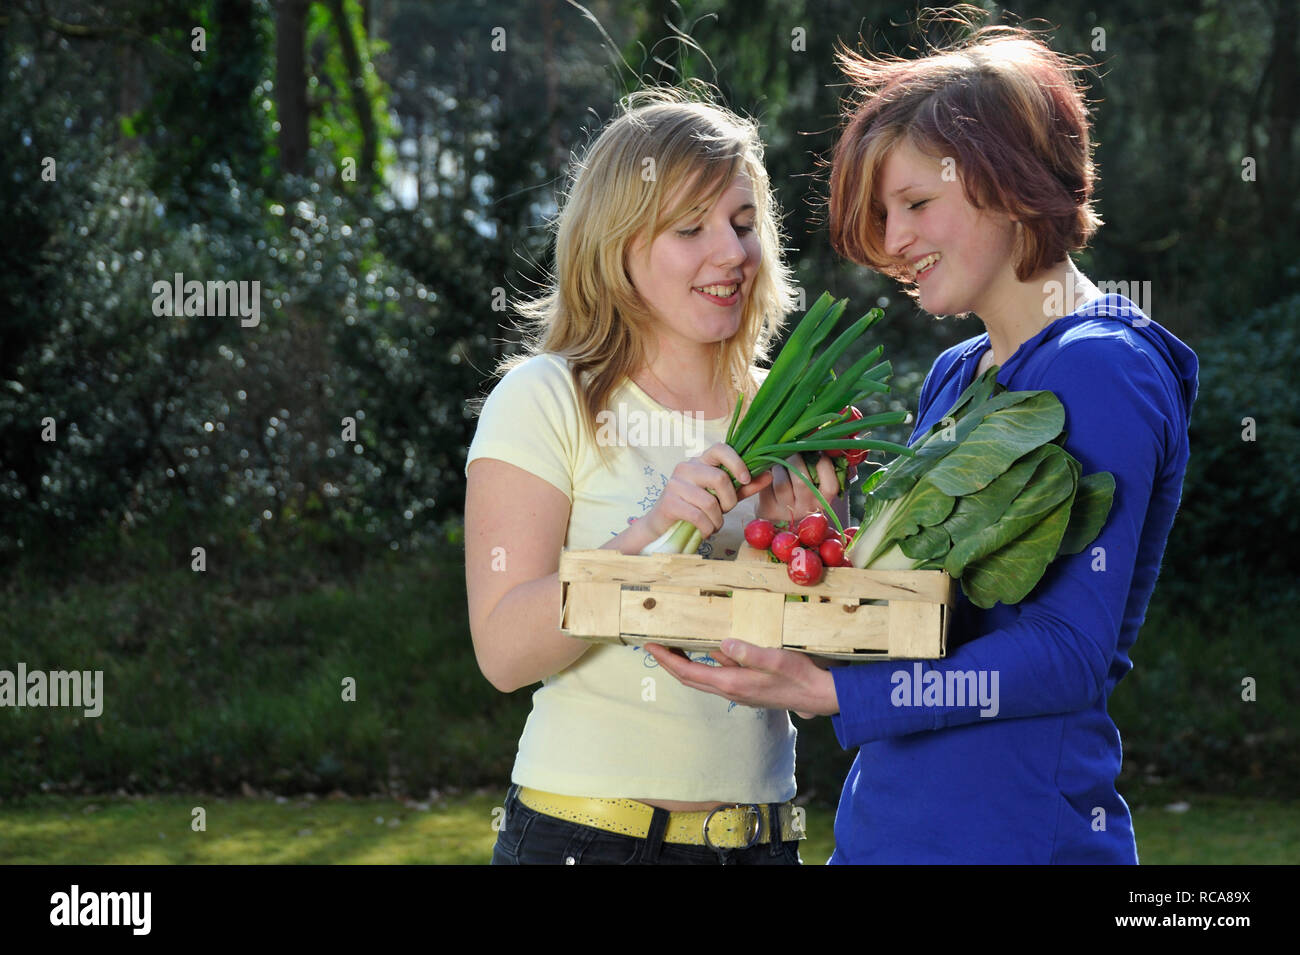 zwei jungendliche Frauen mit Gemüsekorb im Arm - junges Gemüse | two young women with vegetable basket Stock Photo